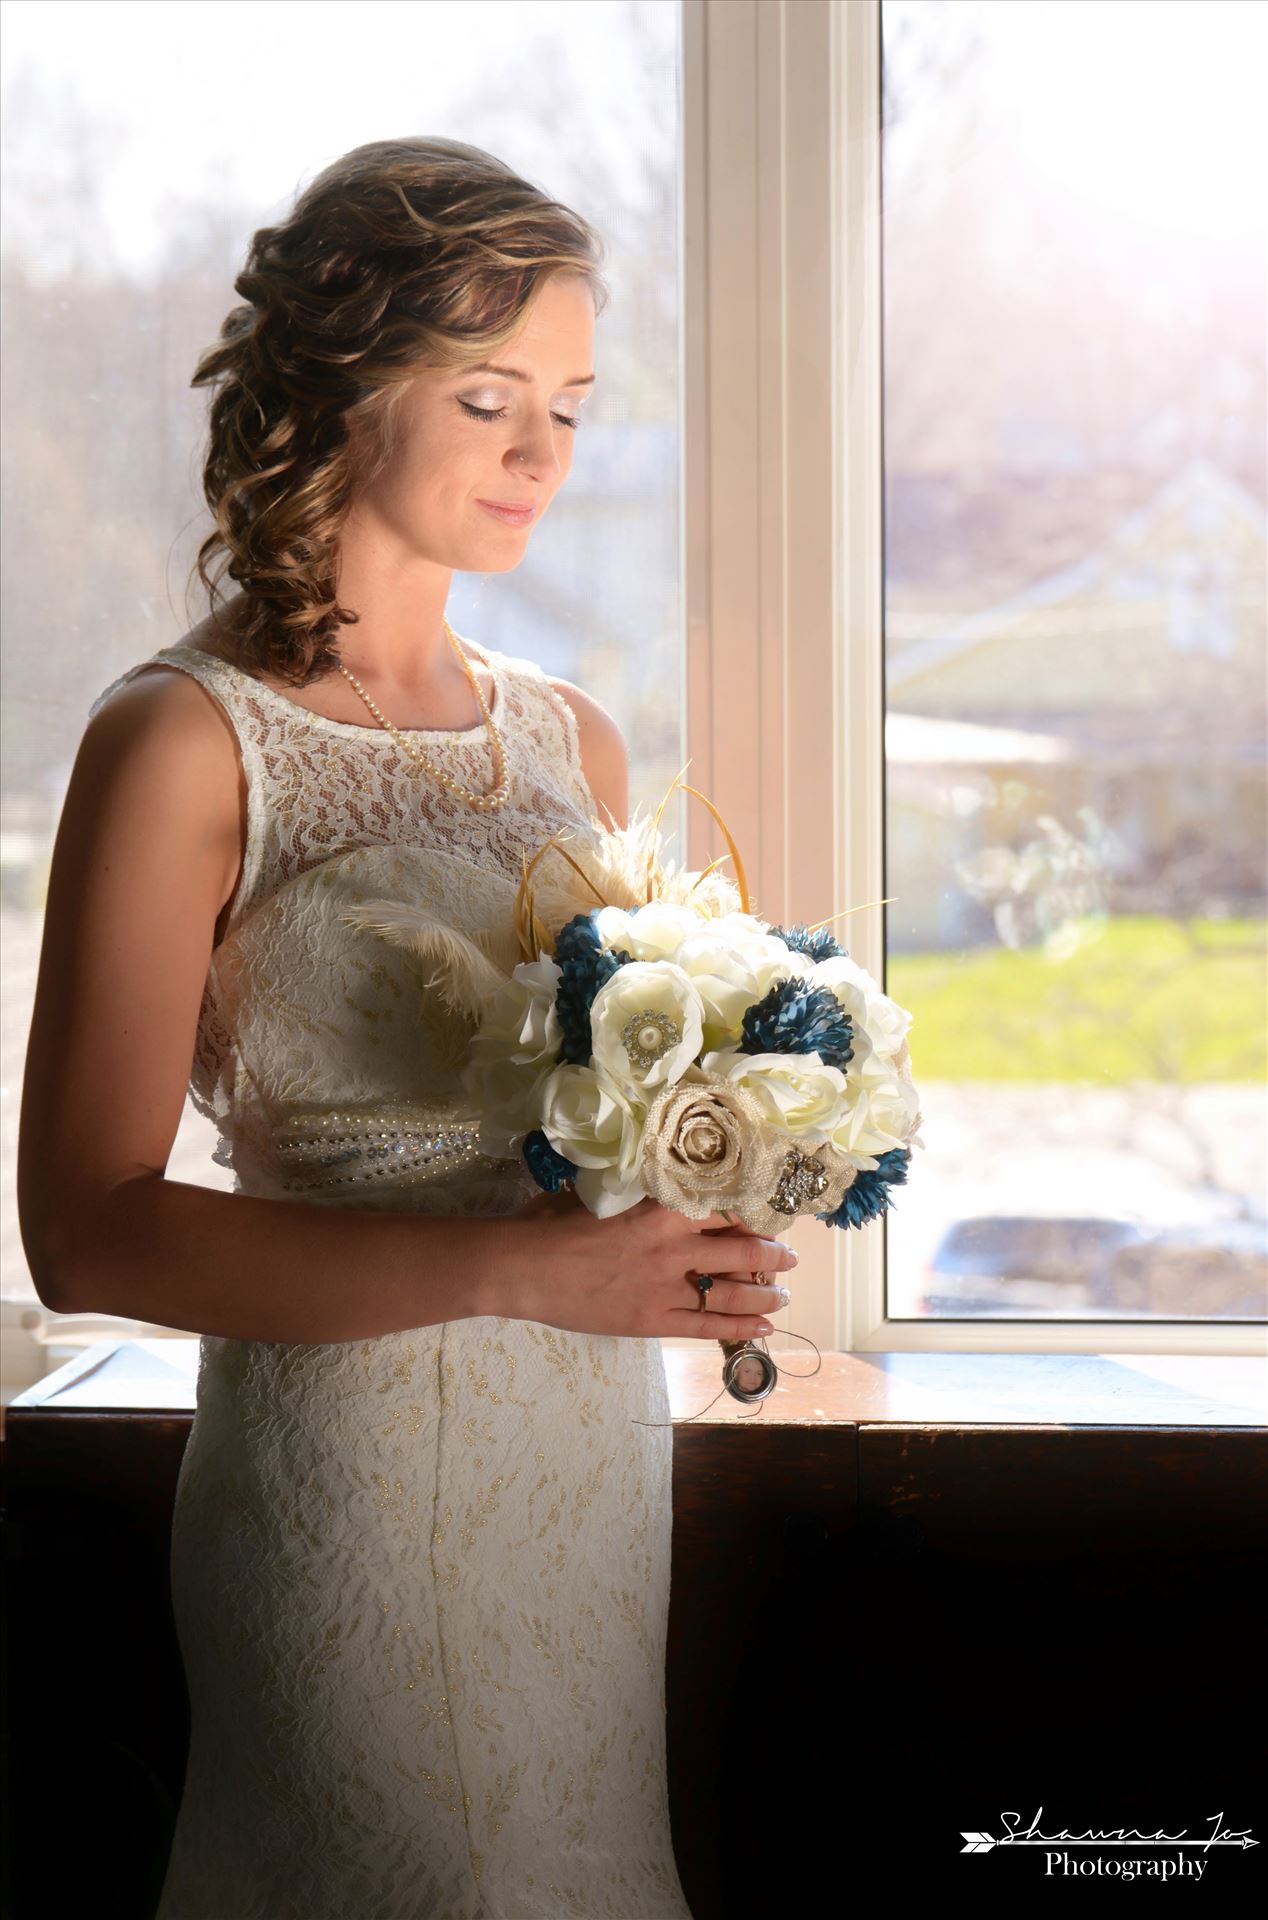 LodgeWedding2.jpg - Shawna made a beautiful glowing bride by Shawna Jo Photography